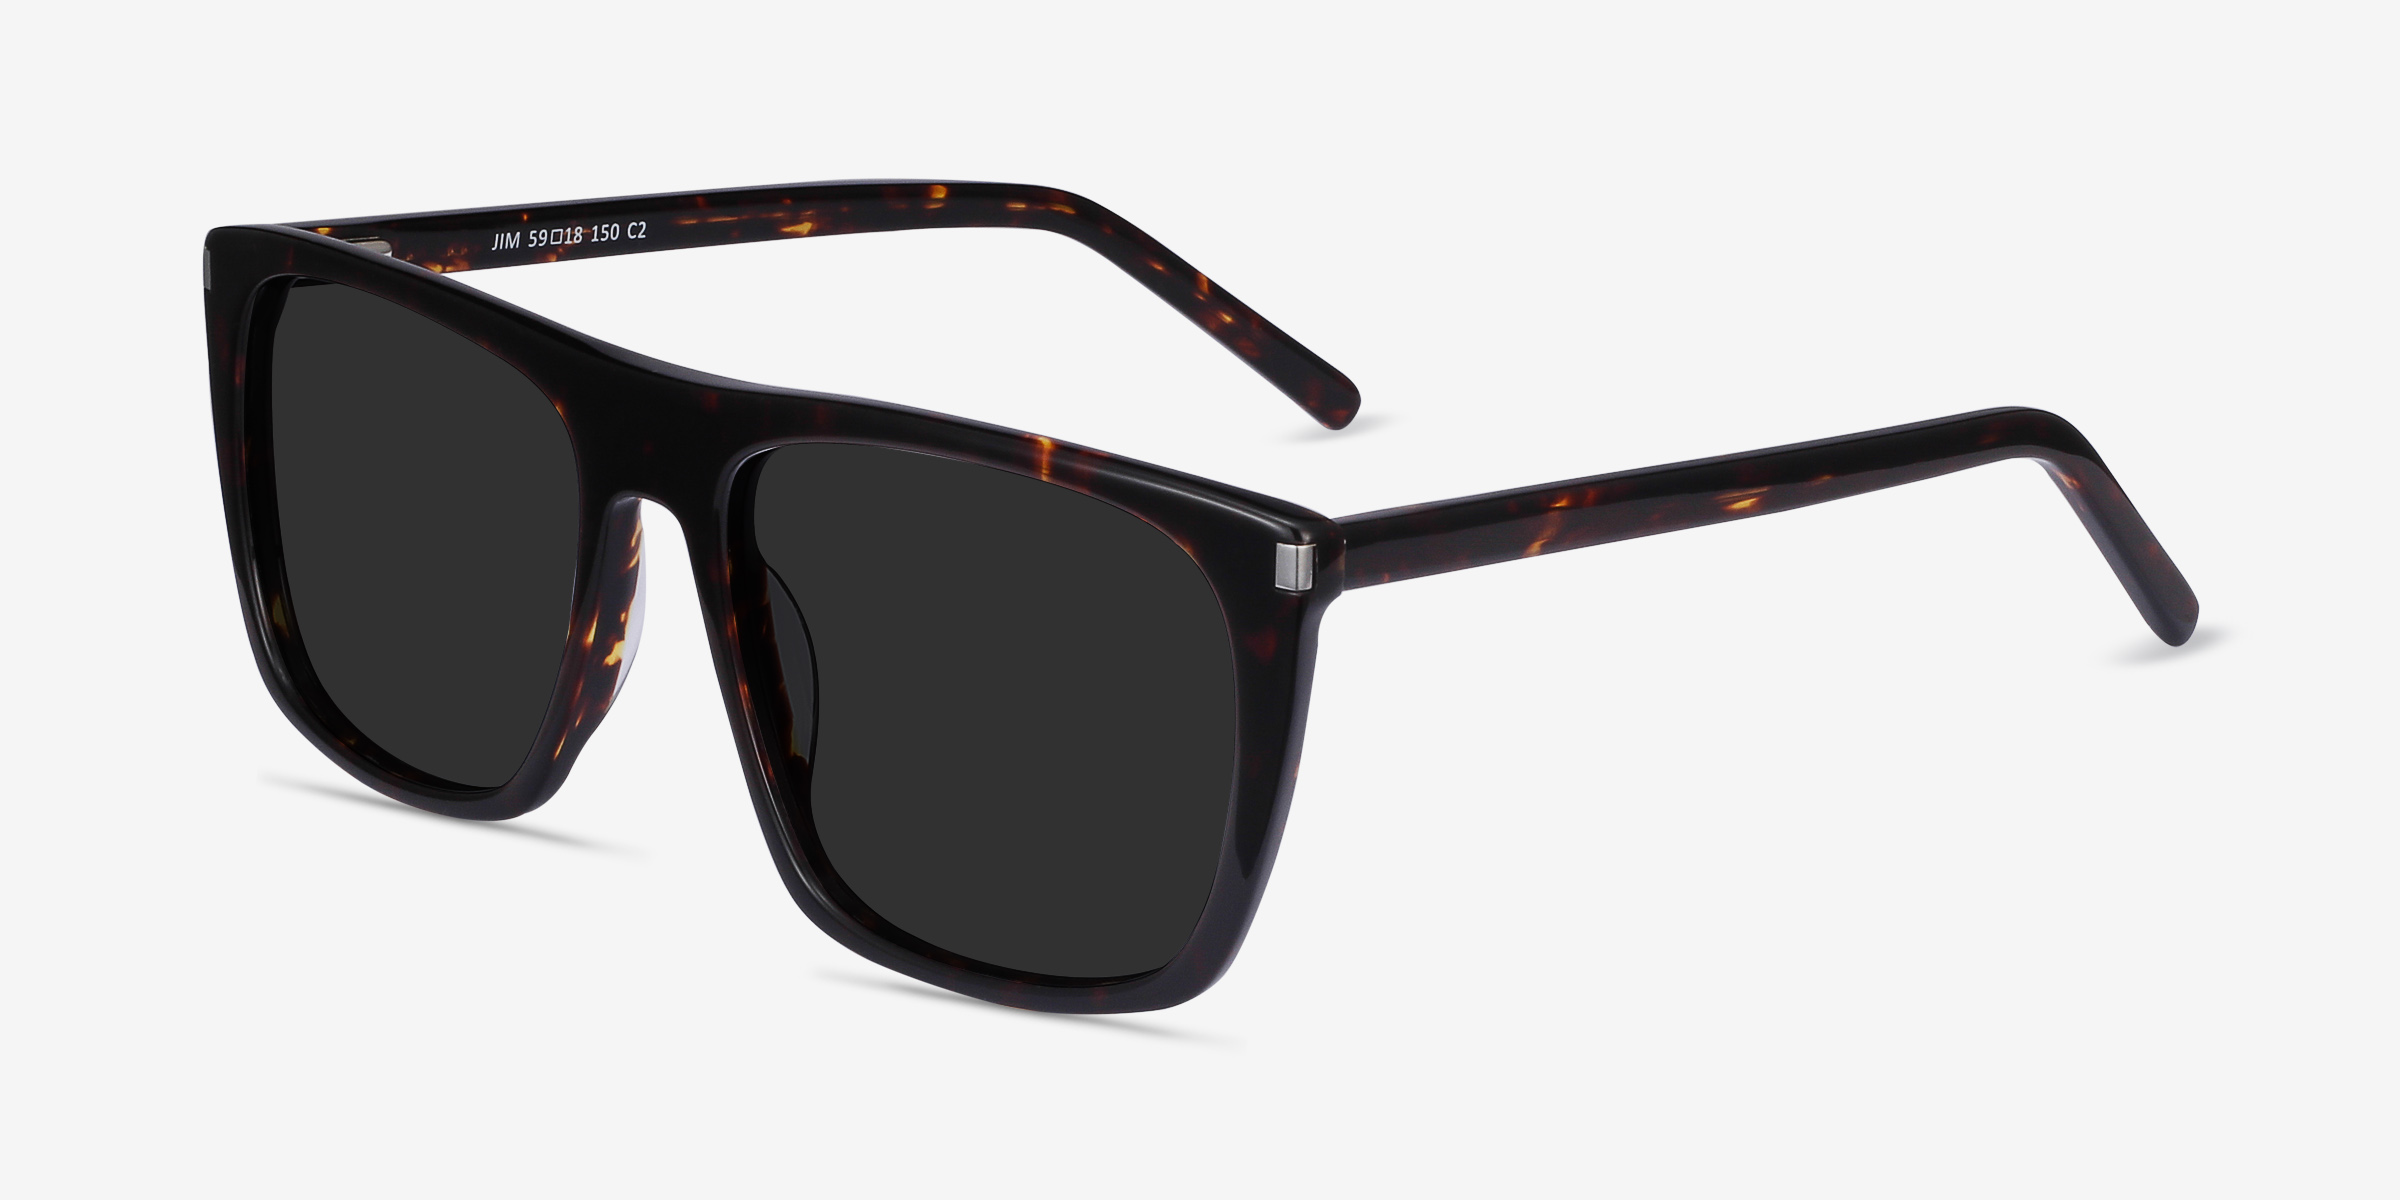 Jim Square Dark Tortoise Frame Sunglasses For Men Eyebuydirect Canada